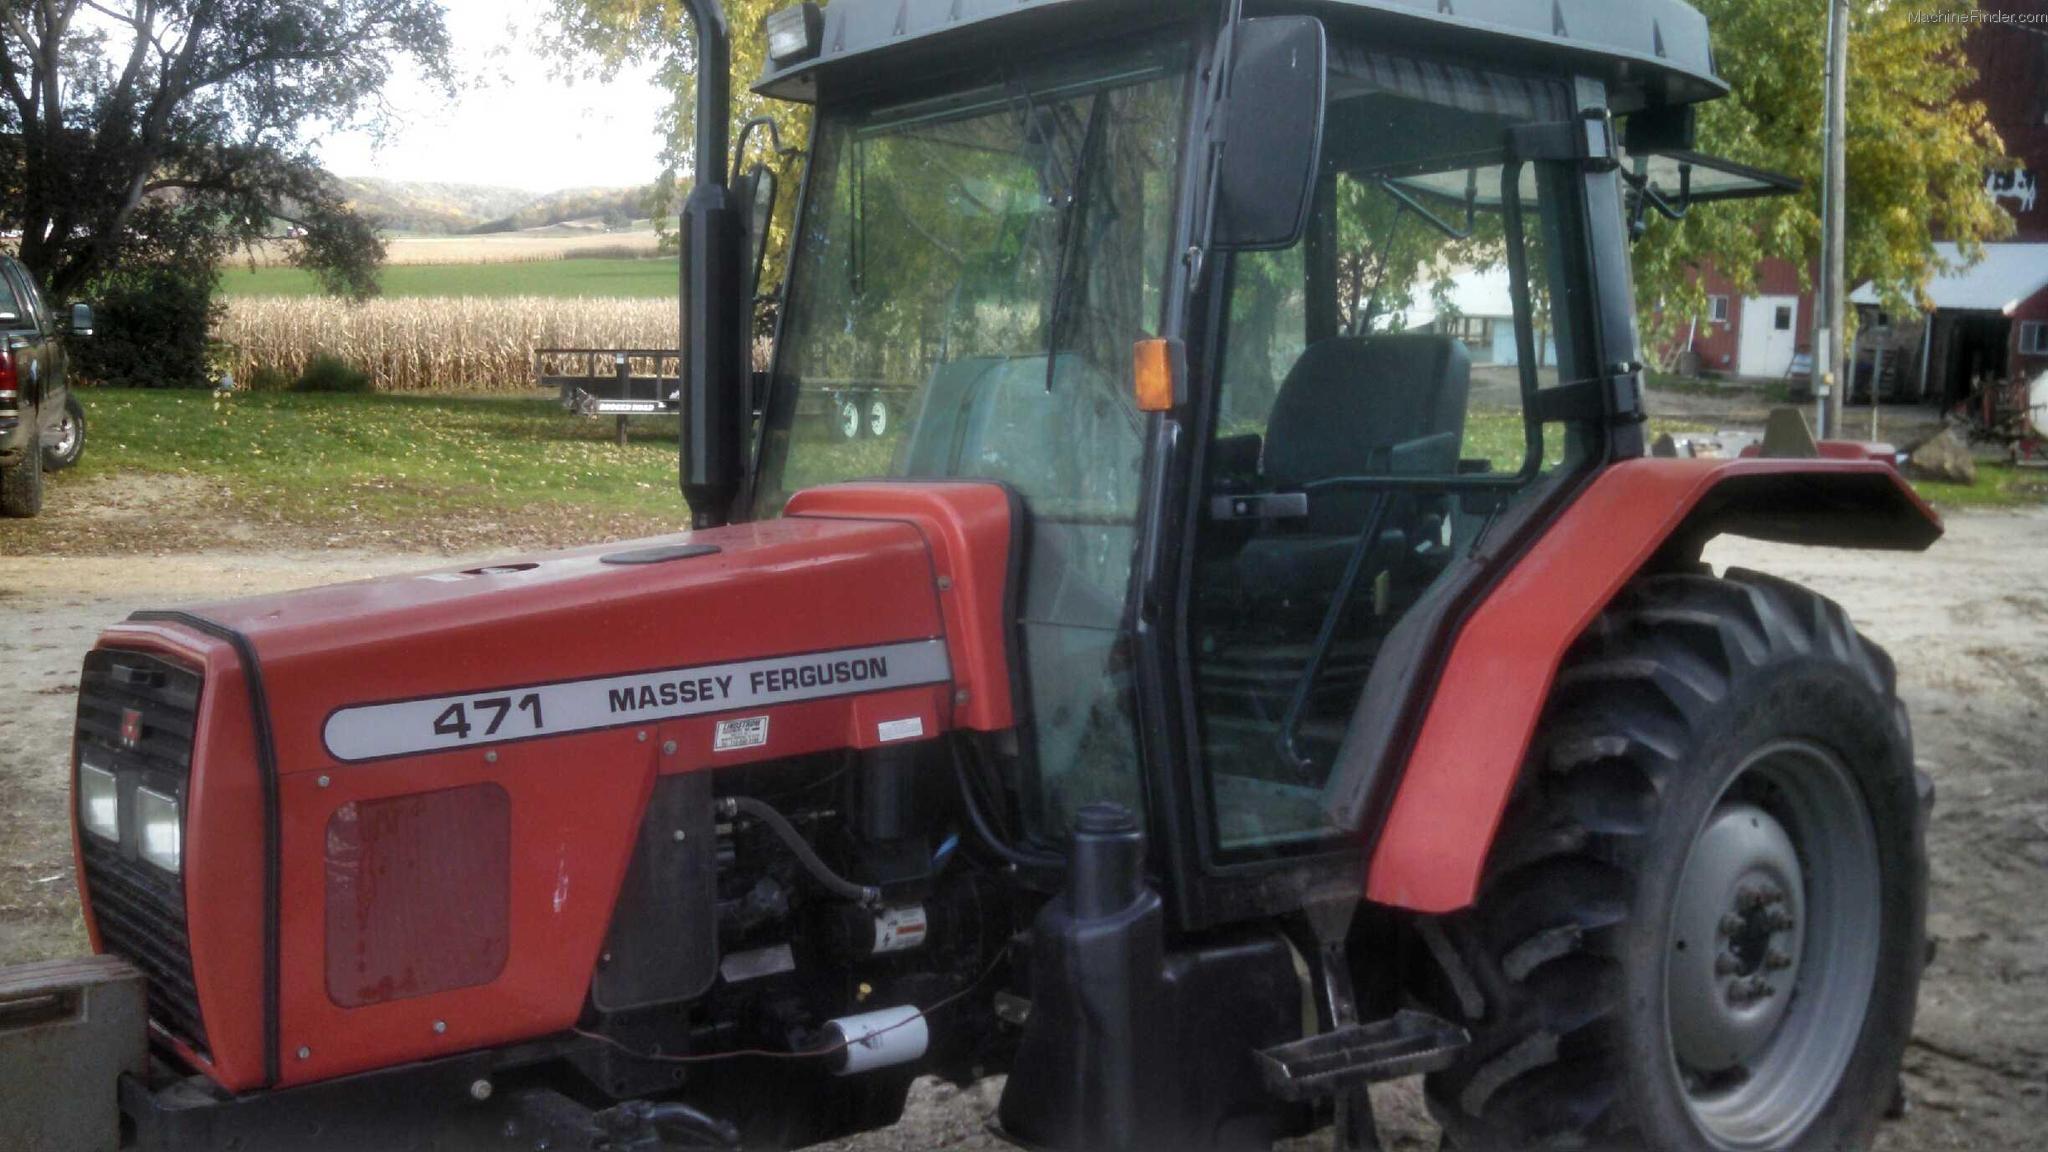 2008-massey-ferguson-471-tractors-compact-1-40hp-john-deere